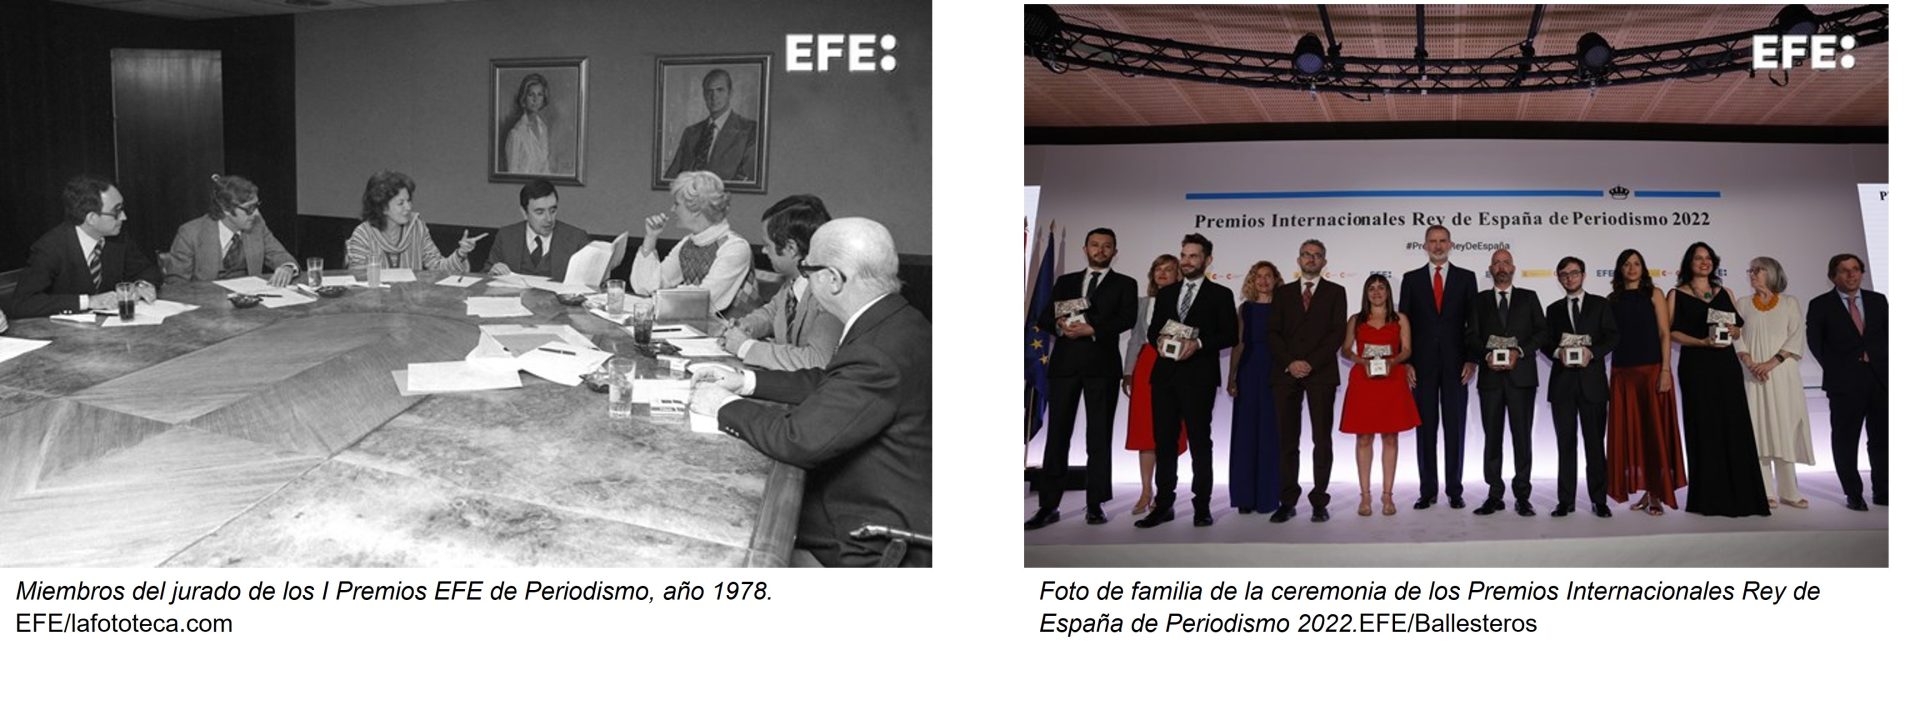 Premios EFE de Periodismo y Premios Internacionales Rey de España de Periodismo